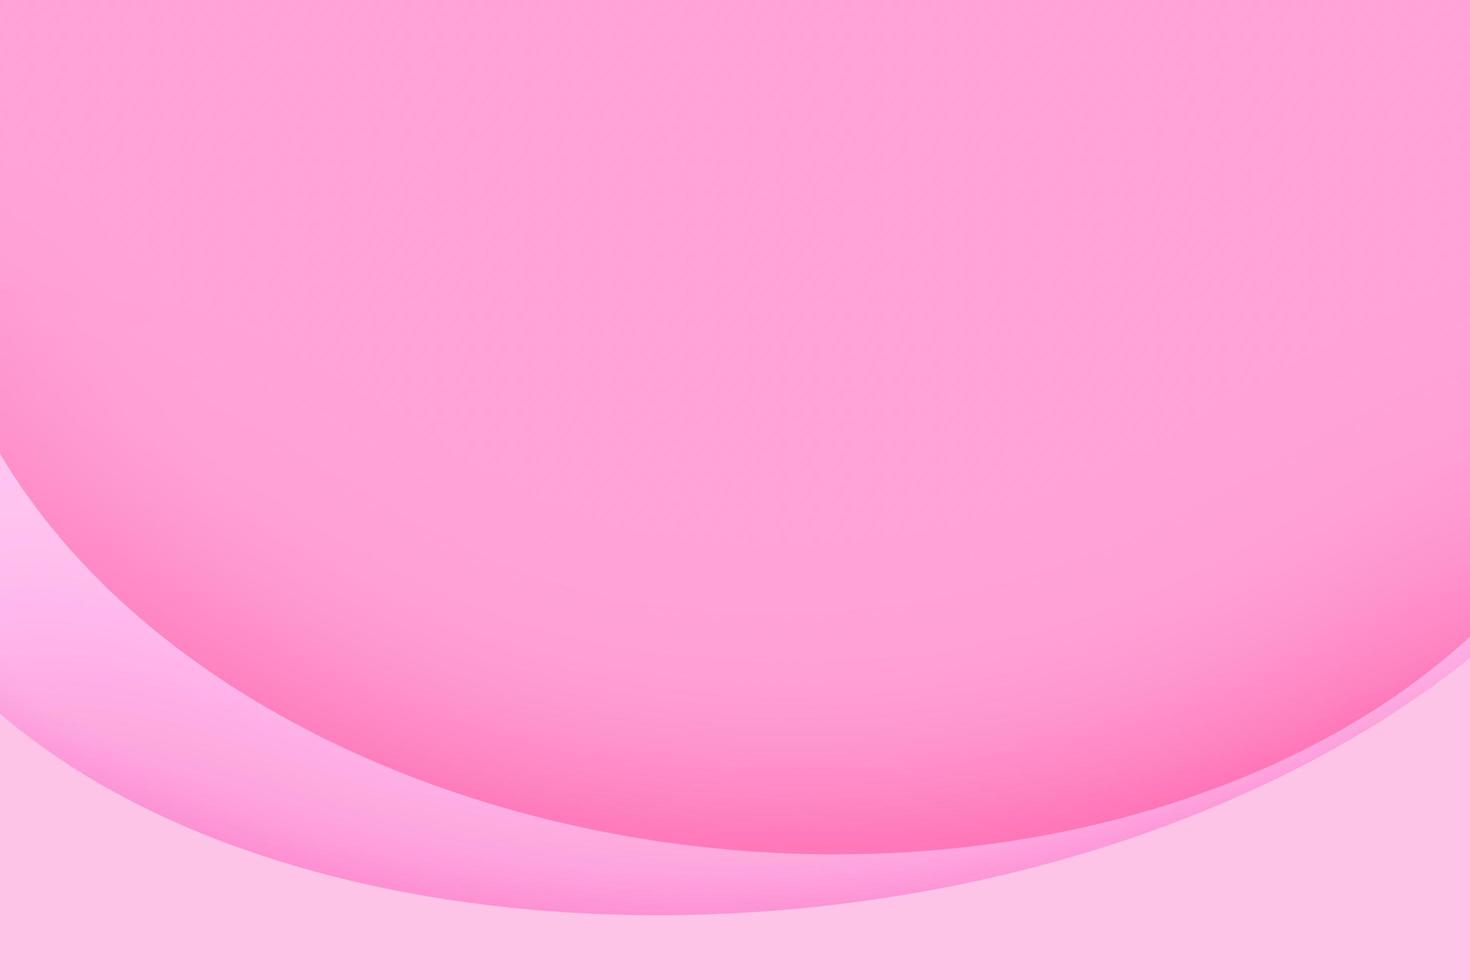 linhas curvas em fundo rosa para cartão de felicitações de dia dos namorados foto